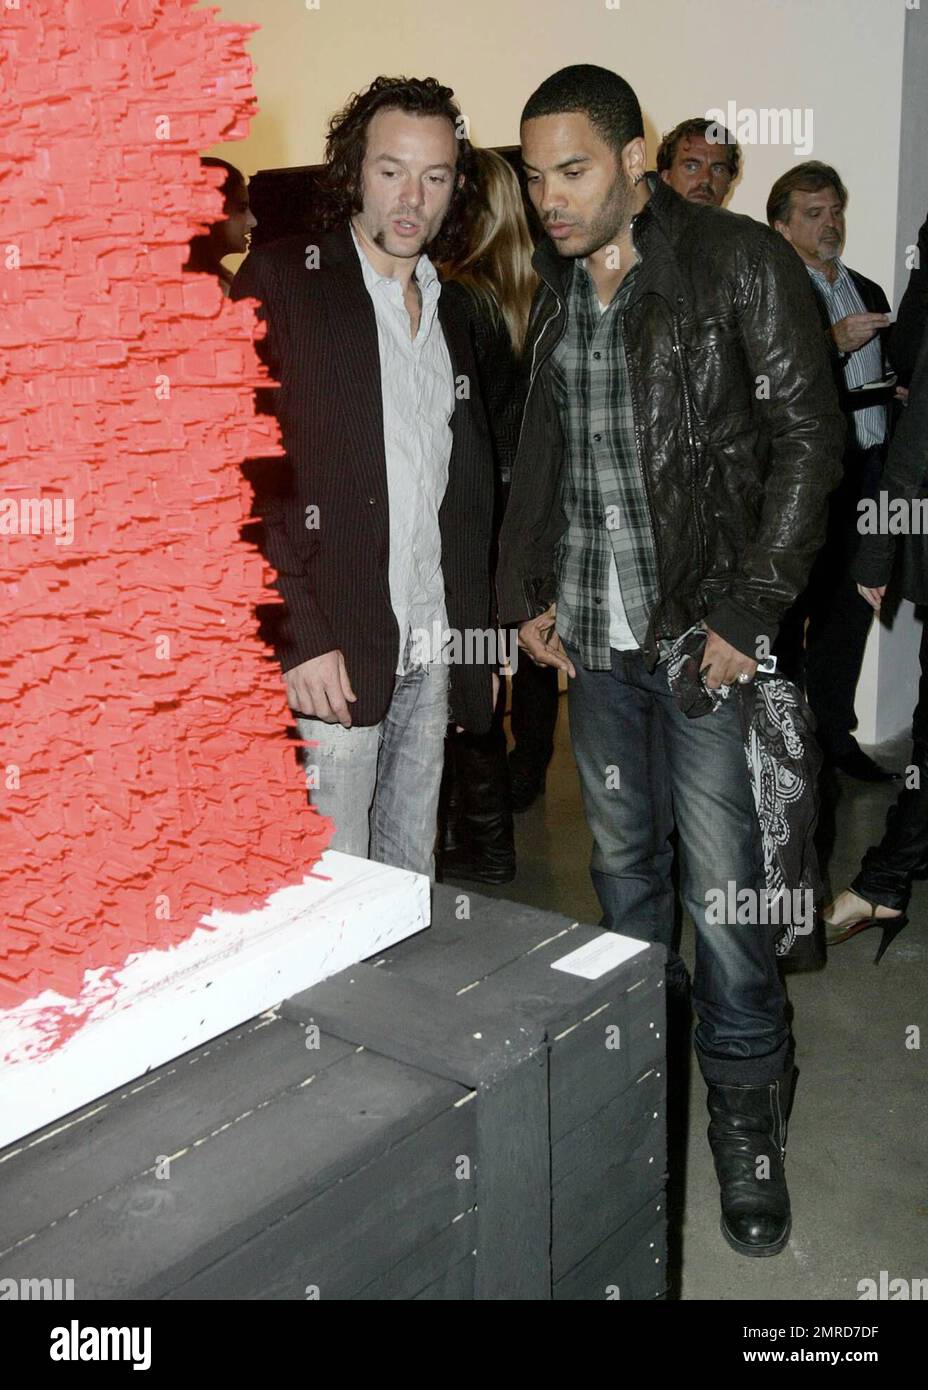 Lenny Kravitz besucht den Eröffnungsempfang von David LaChapelle - Jesus ist mein Hausmann und Arne Quinze - Skulpturen während Art Basel Miami 2008 im Miami Design District. Miami, Florida 12/02/08. Stockfoto